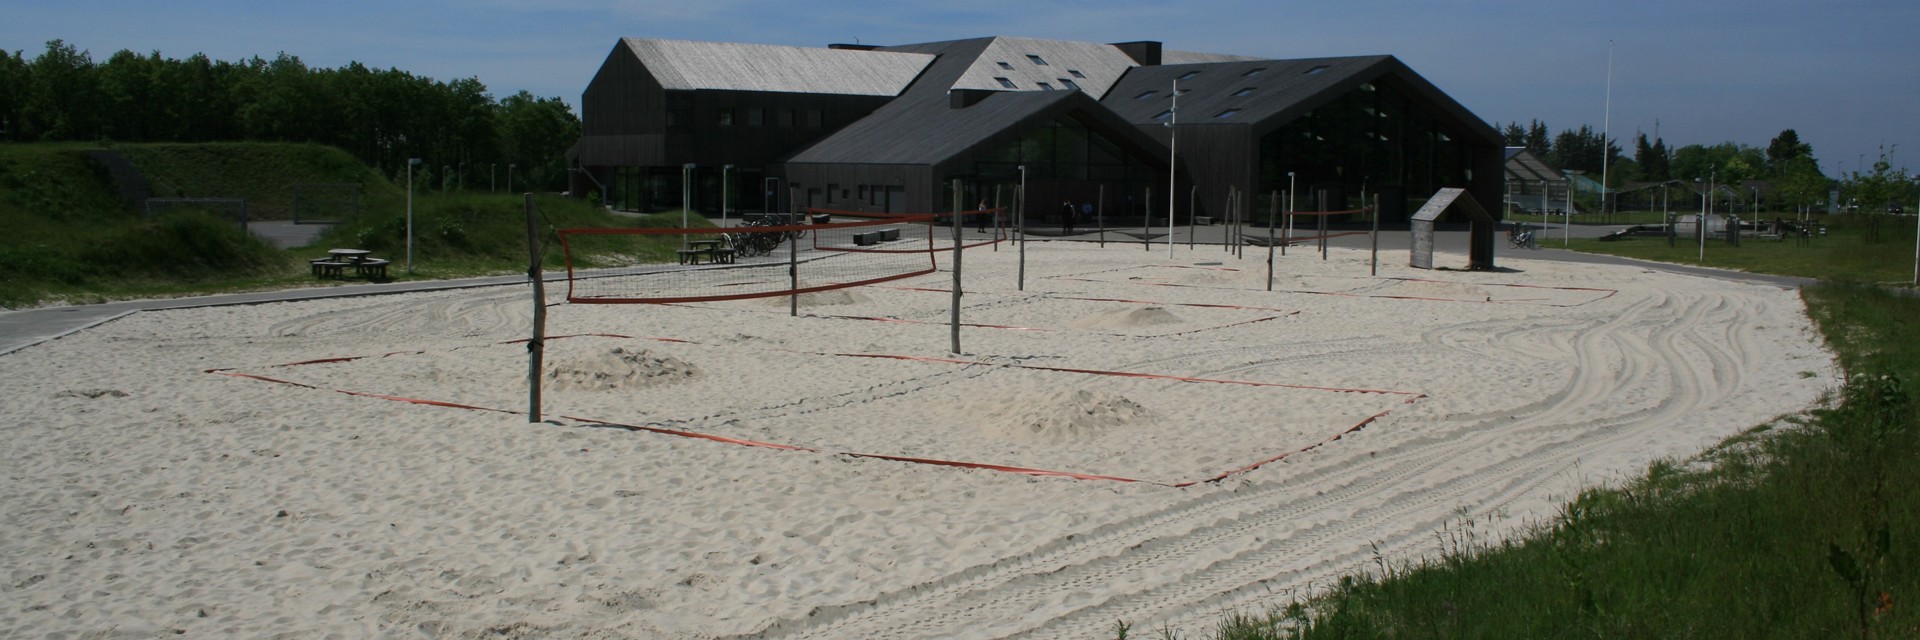 Beachvolley net sat op i et stort sandareal ved siden af Hjertet